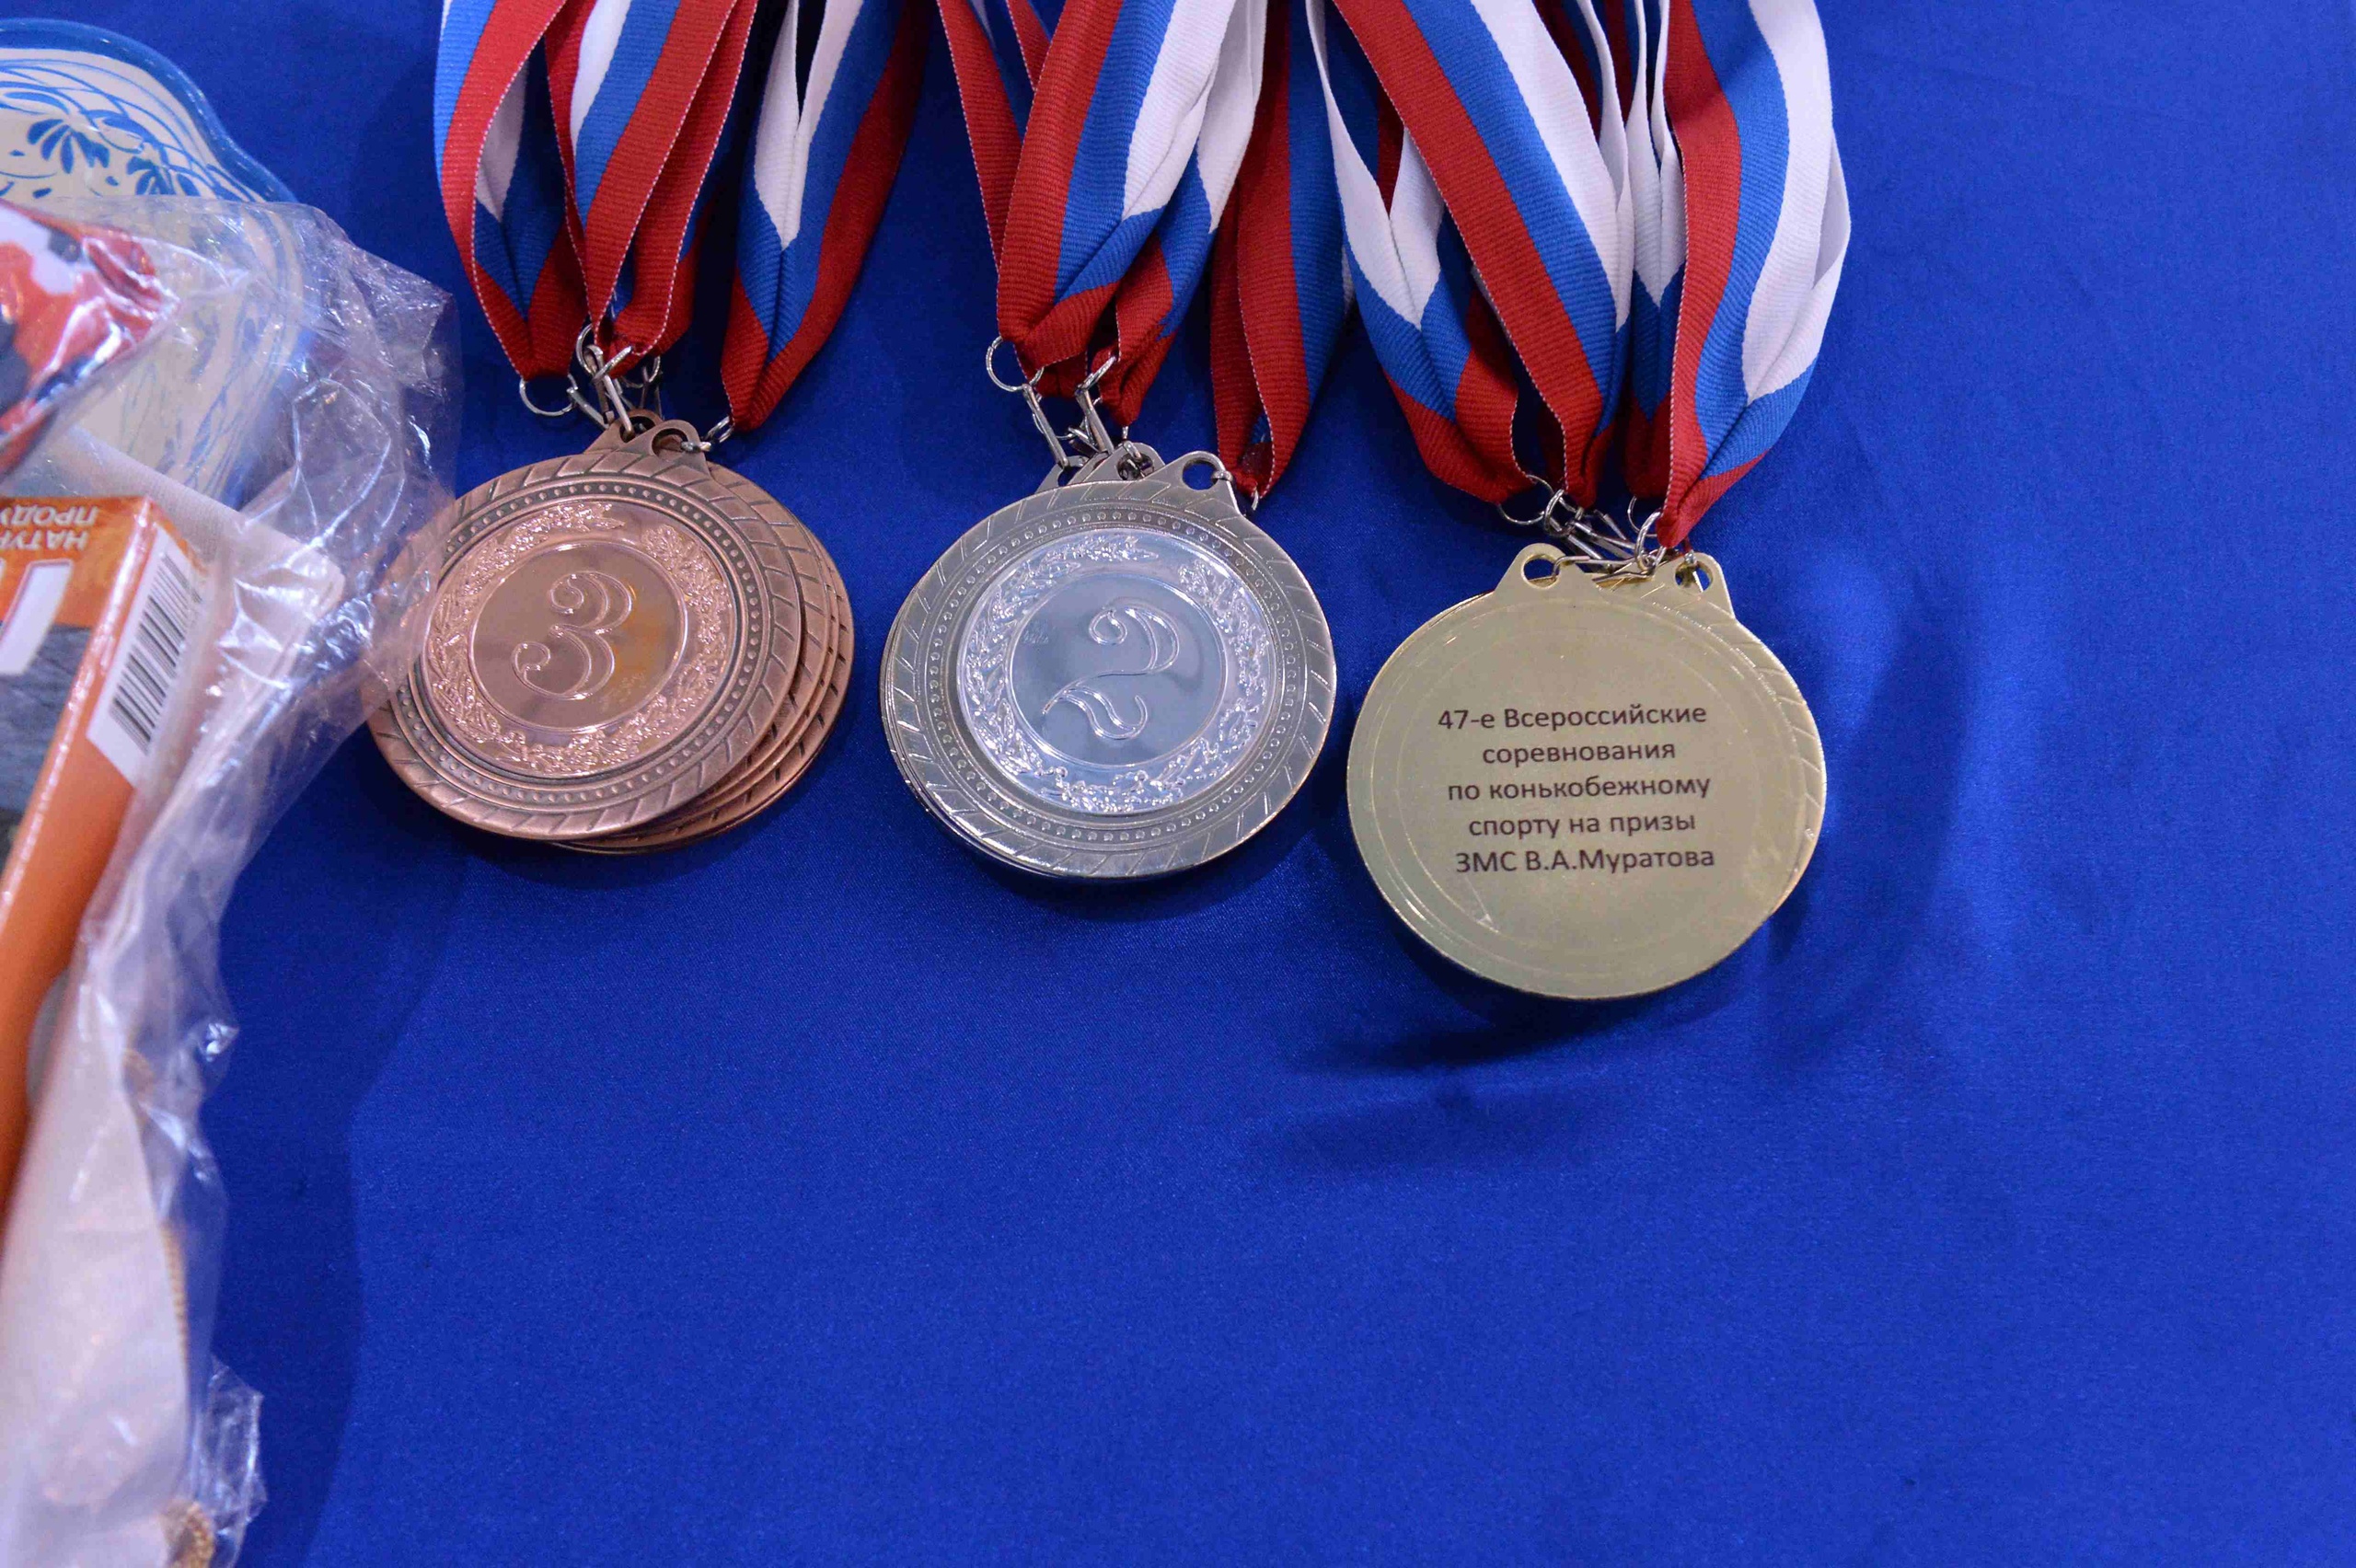 В конькобежном центре «Коломна» завершились Всероссийские соревнования на призы Валерия Муратова.